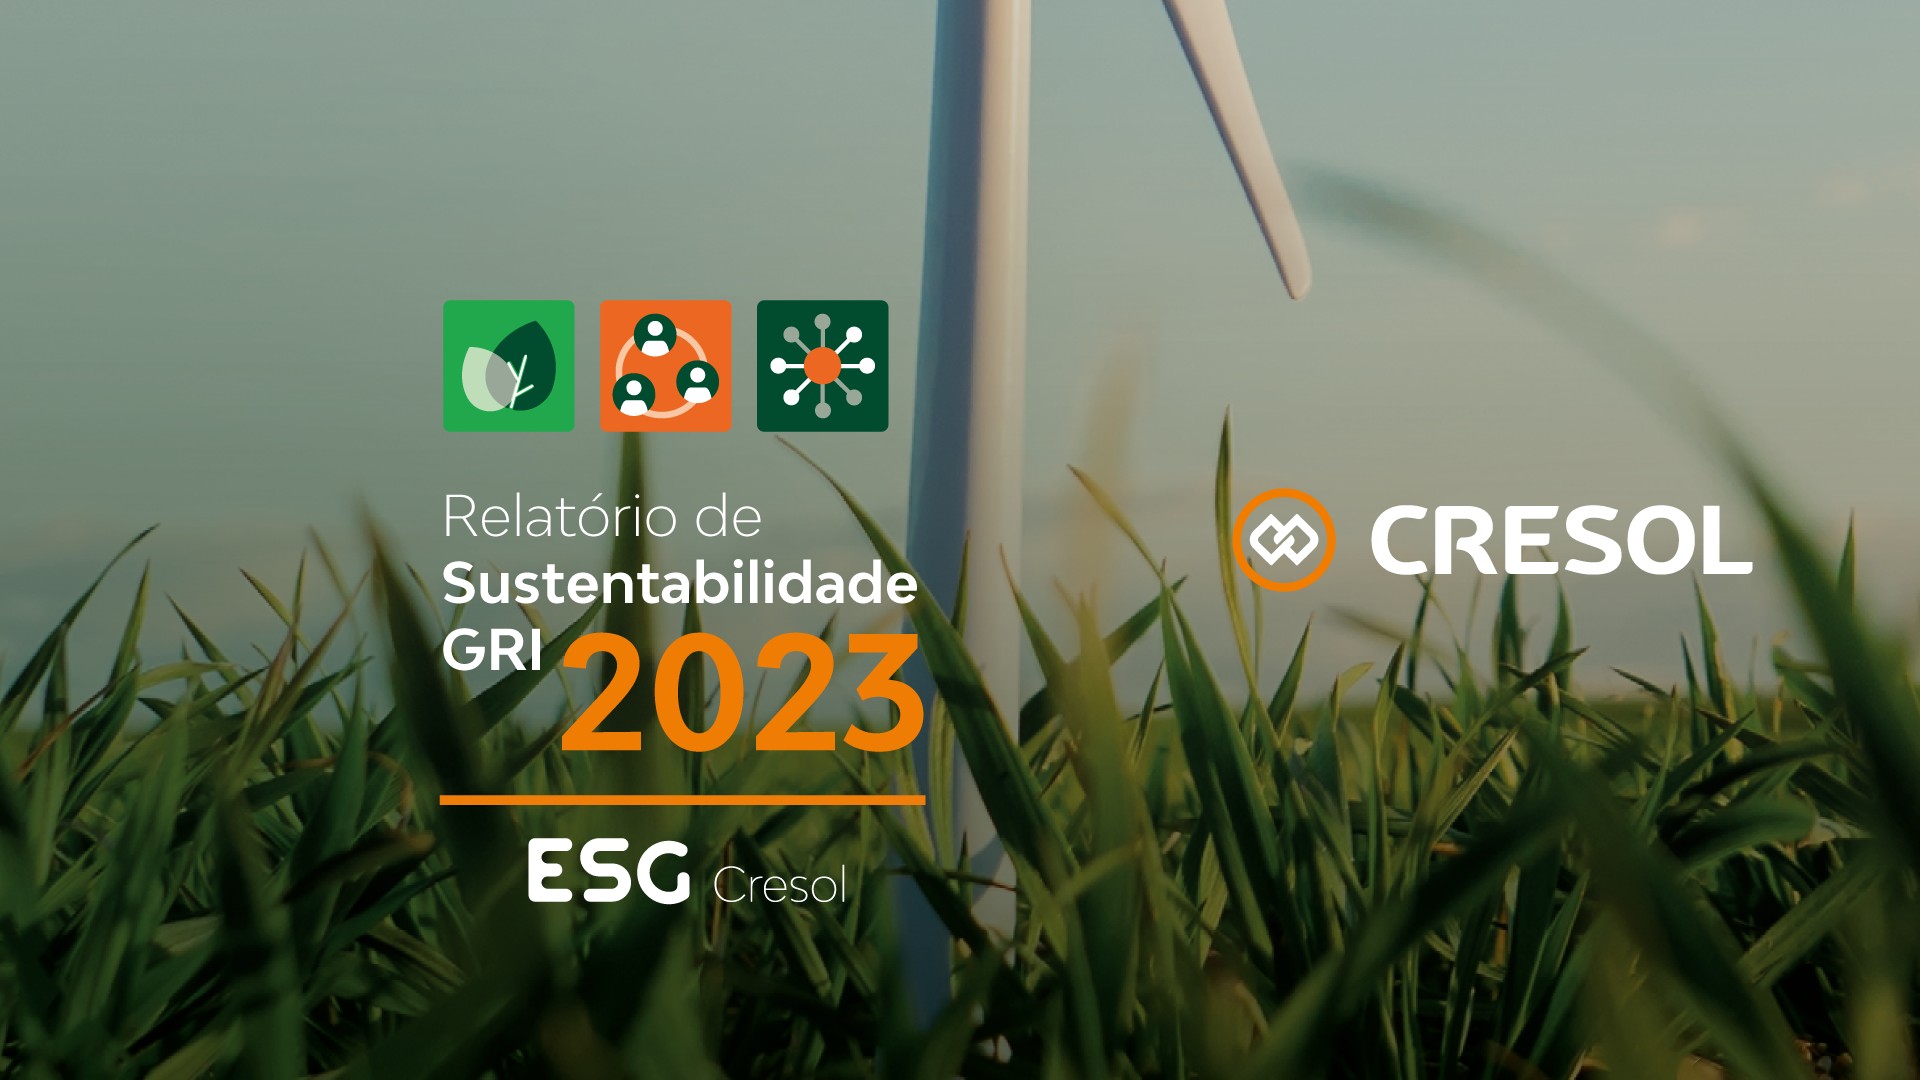 Relatório de Sustentabilidade da Cresol mostra expansão de indicadores